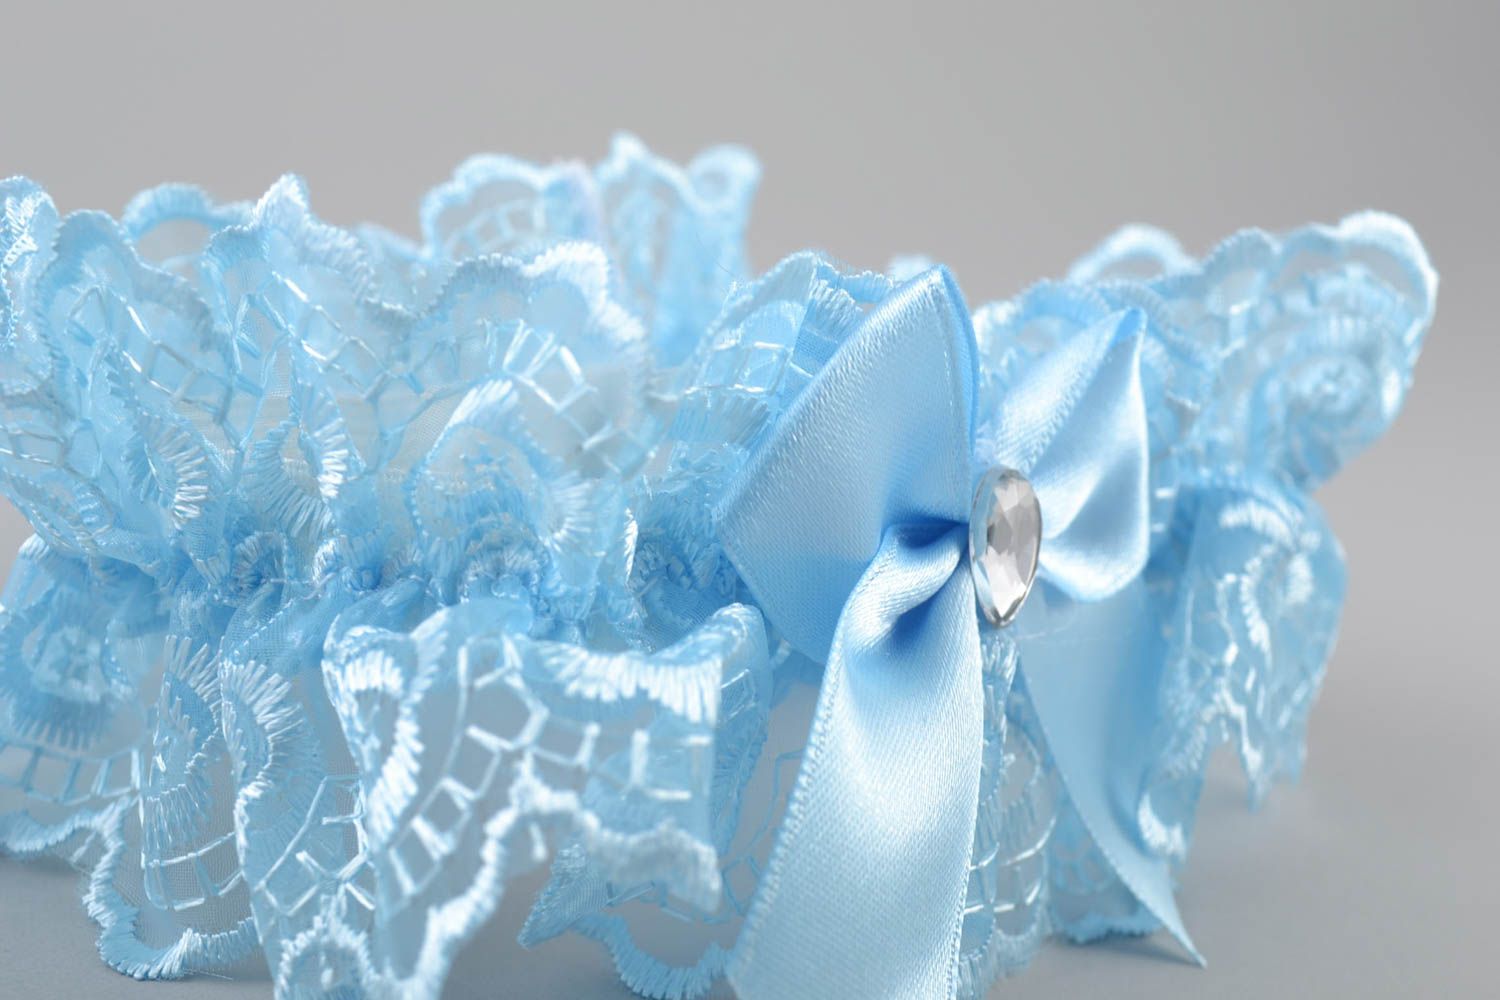 Jarretière de mariée bleue avec noeud en guipure faite main stylée élégante photo 4